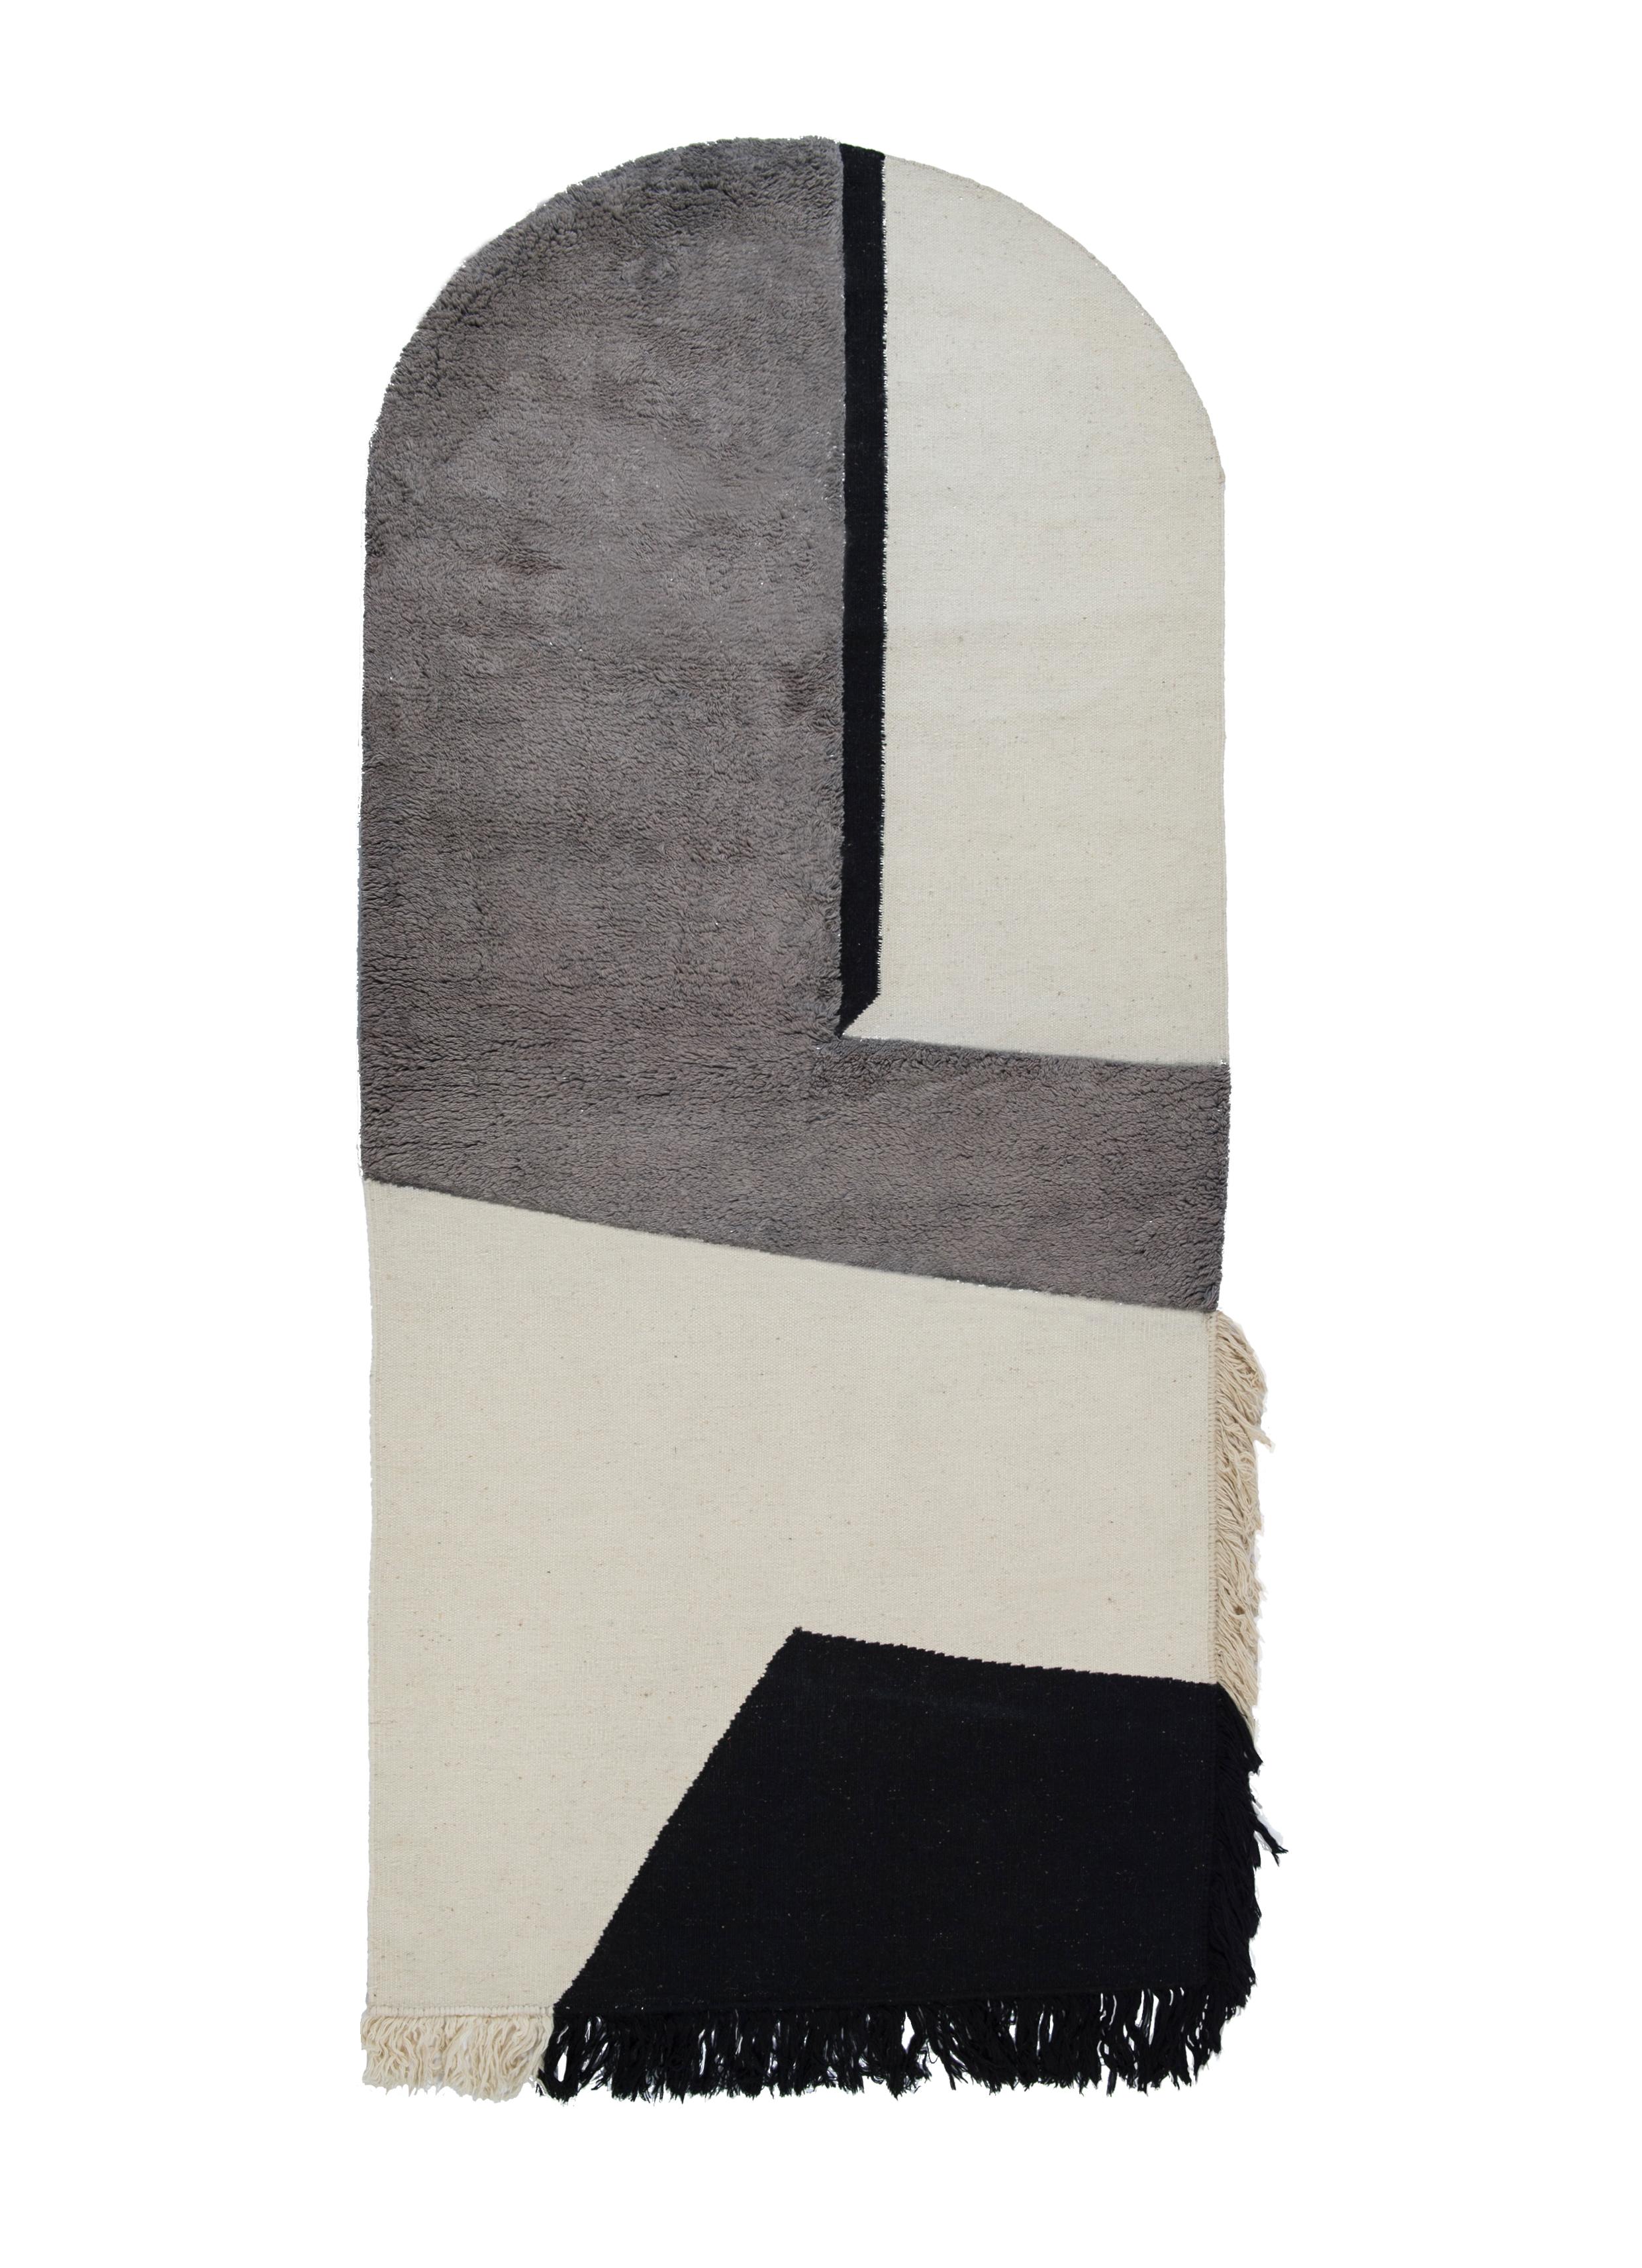 Nr. 277 freeplay handgeknüpfter Teppich von Lyk Carpet
Abmessungen: L 270 x B 120 cm.
MATERIALIEN: 100% tibetische Hochlandwolle, handgekämmte und handgesponnene Schurwolle, natürliche pflanzengefärbte Wolle, 100 Knoten pro